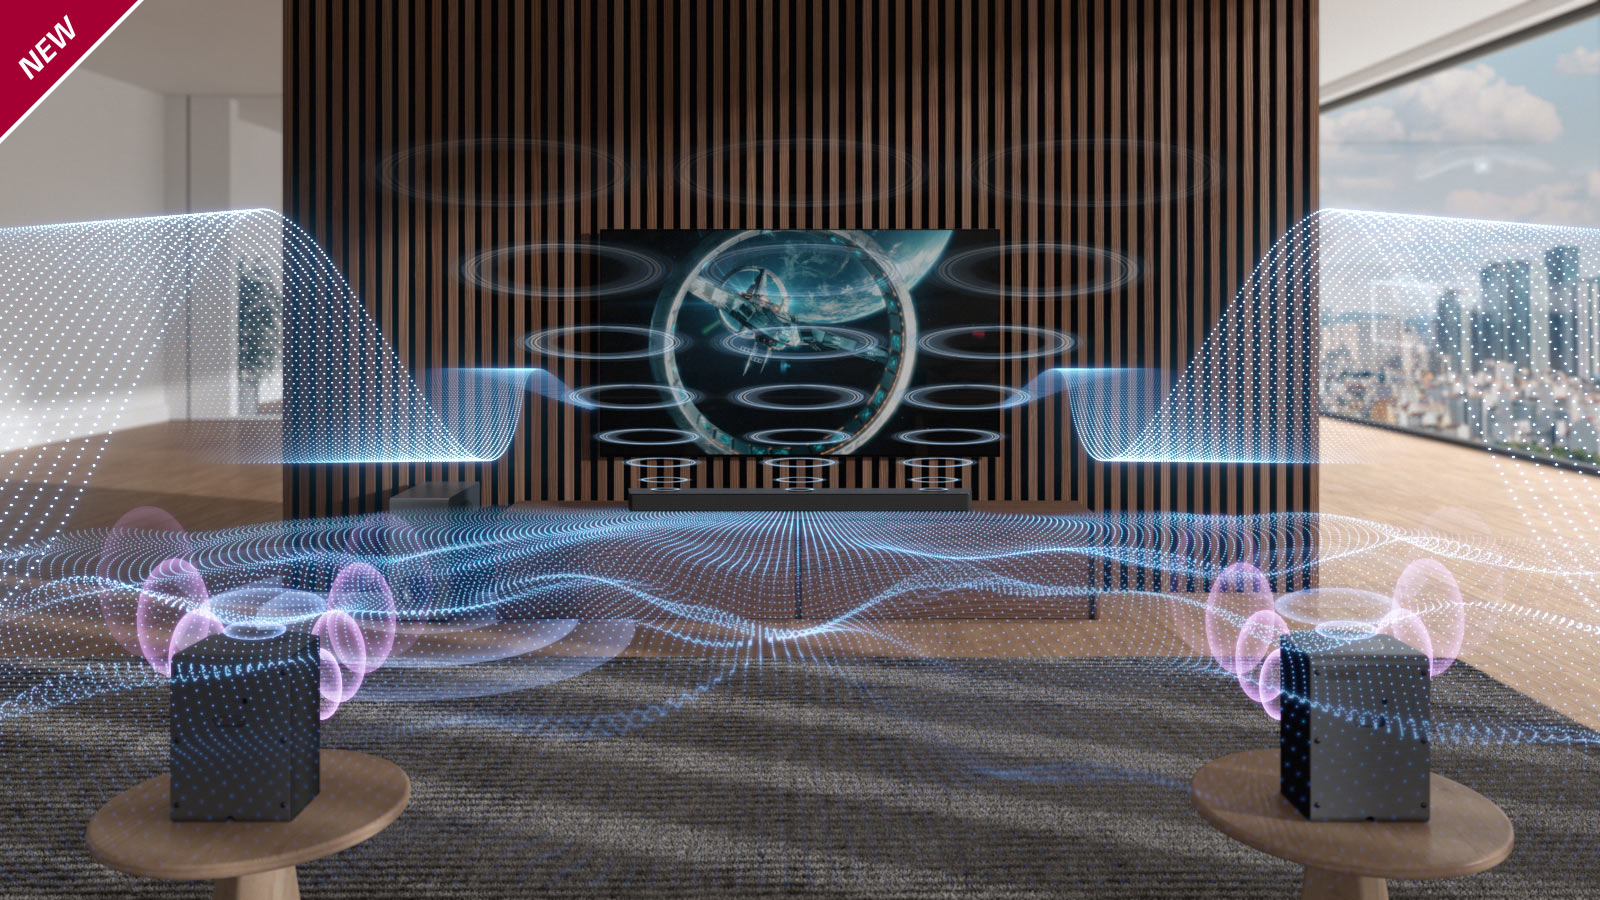 امواج صوتی آبی رنگی با اشکال متفاوت از ساندبار و تلویزیون منتشر می شود. علامت «جدید» (NEW) در گوشه بالا و سمت چپ نشان داده شده است.